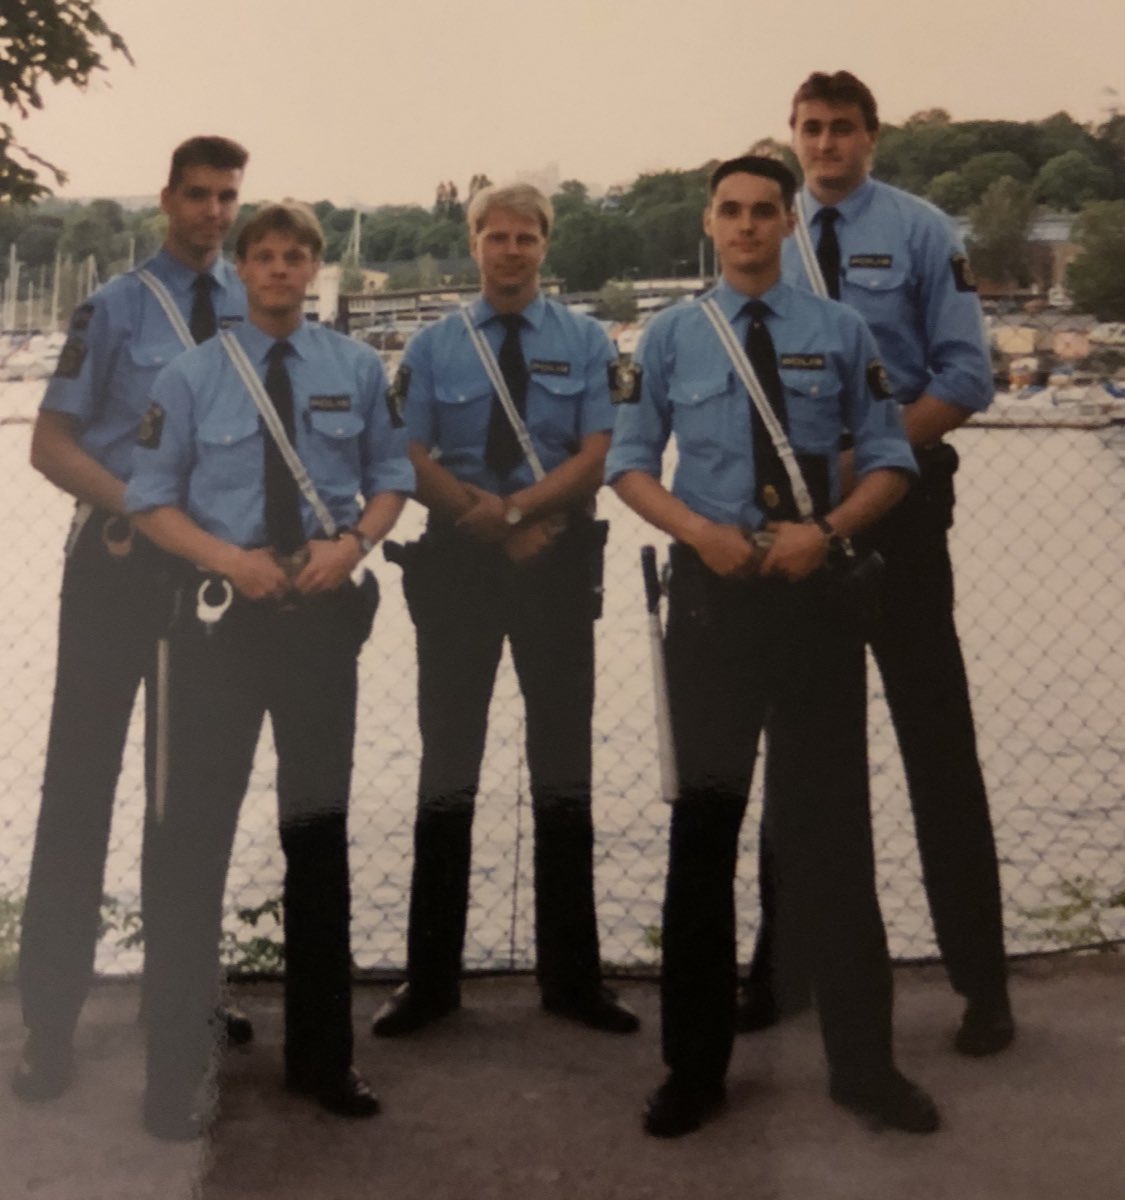 Polisens dag idag. Cred till alla er poliser därute 👏🏽 💙
Jag till höger i bild. Året är 1990. 